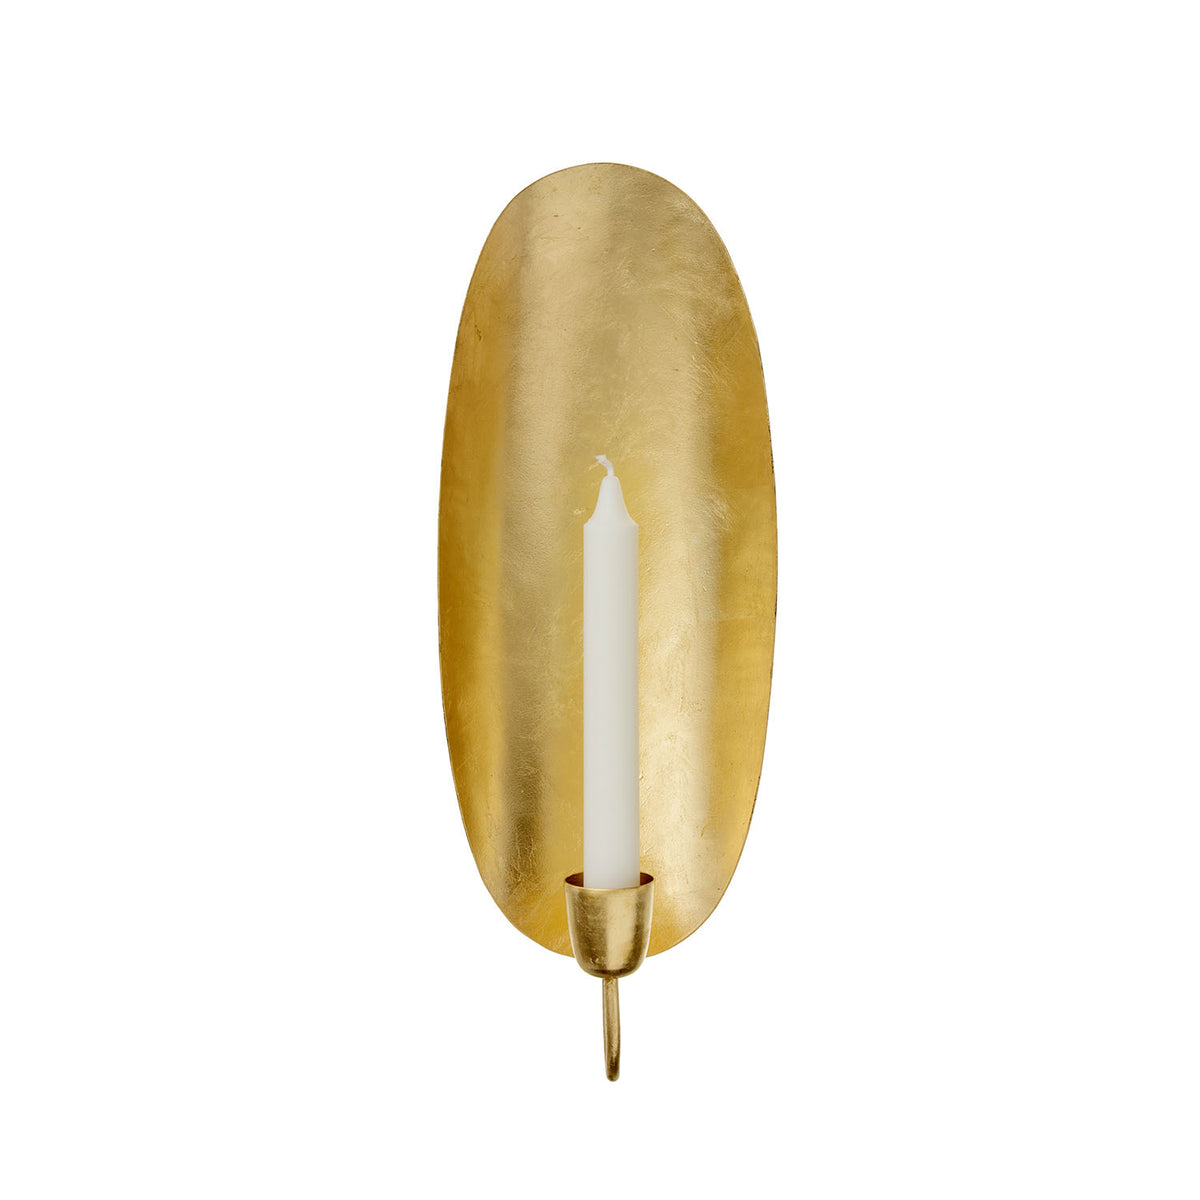 Bungalow / Golden Wall Light / Oval / Kerzenhalter